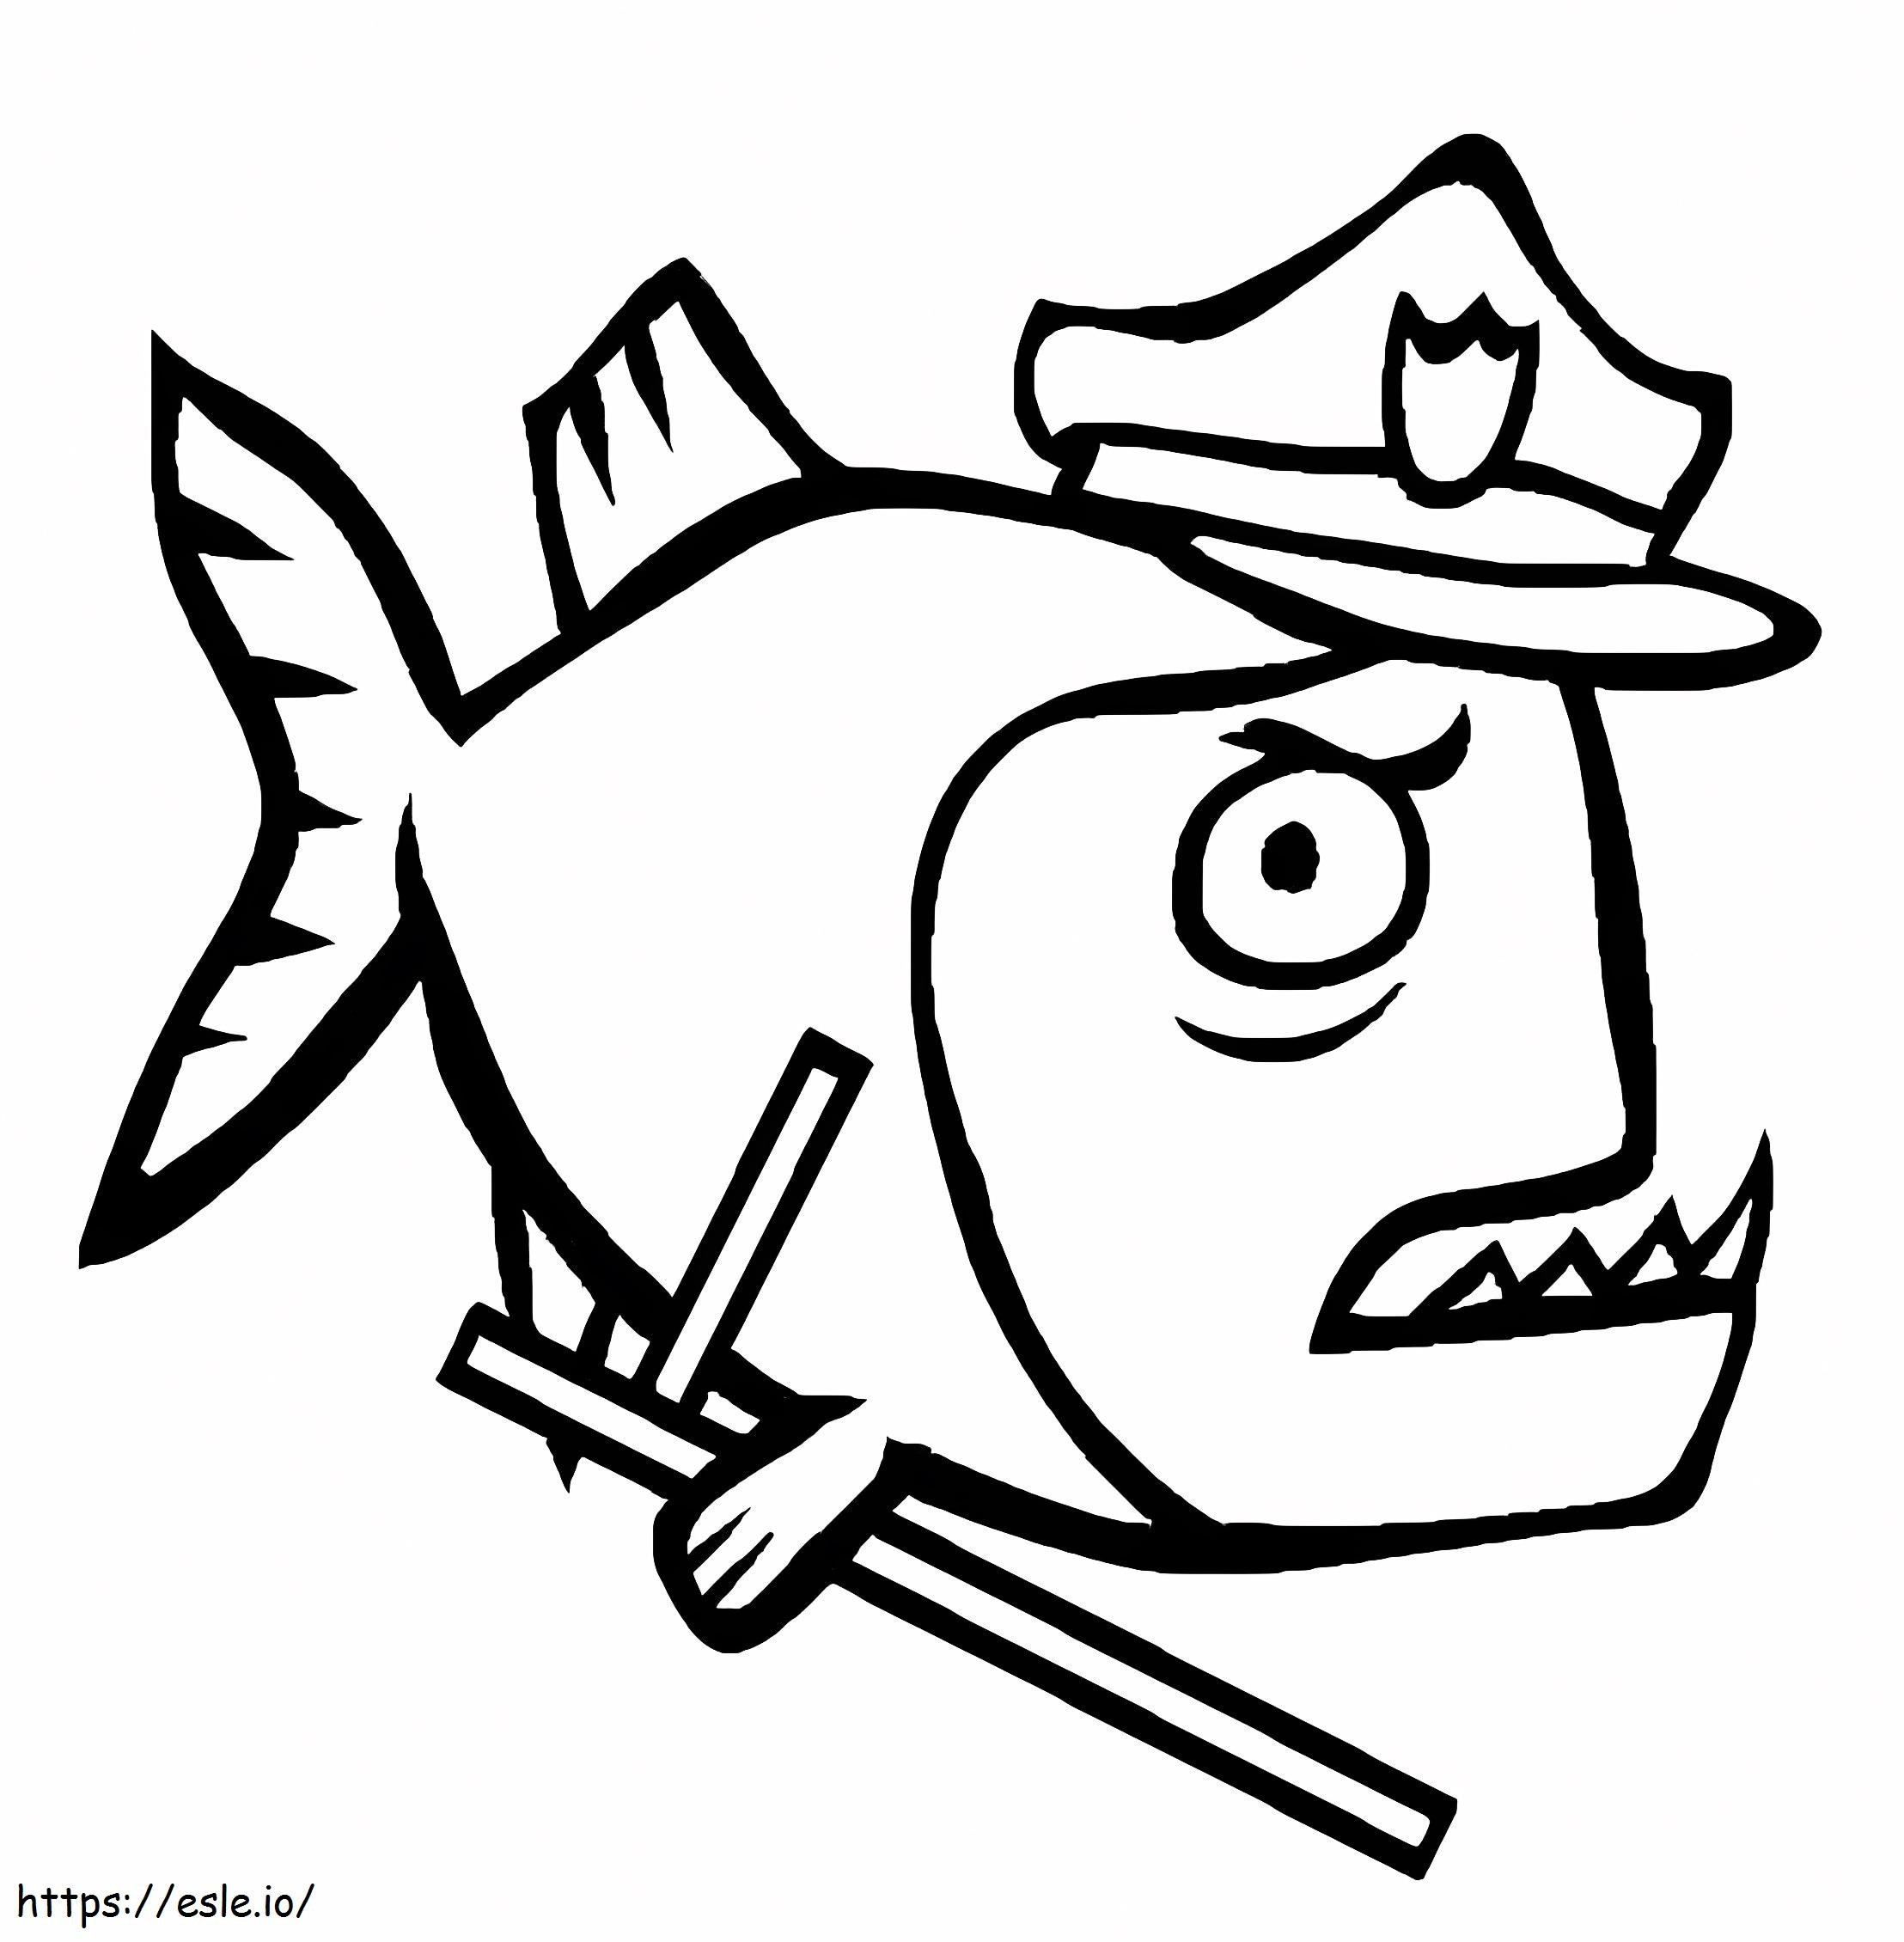 Piranha-Polizei ausmalbilder